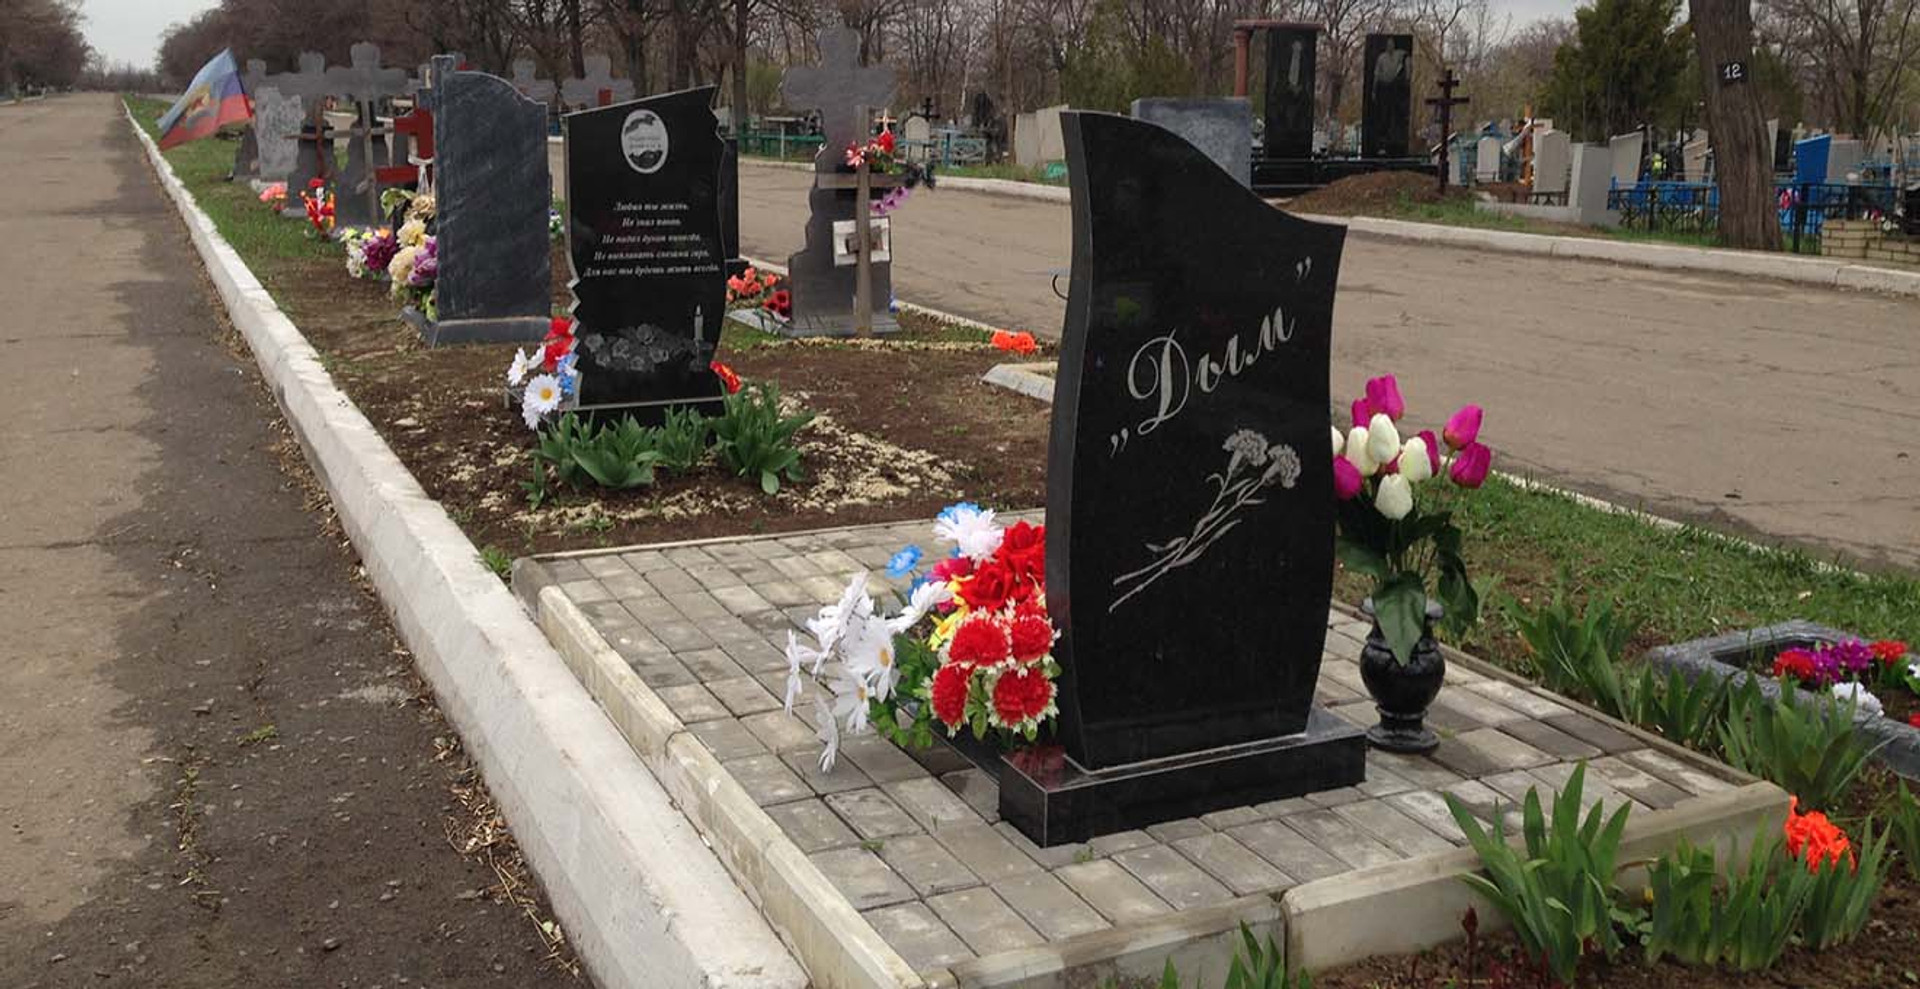 Похорон в ЛНР: экономия на поминках, втайне от соседей, к смерти привыкаешь